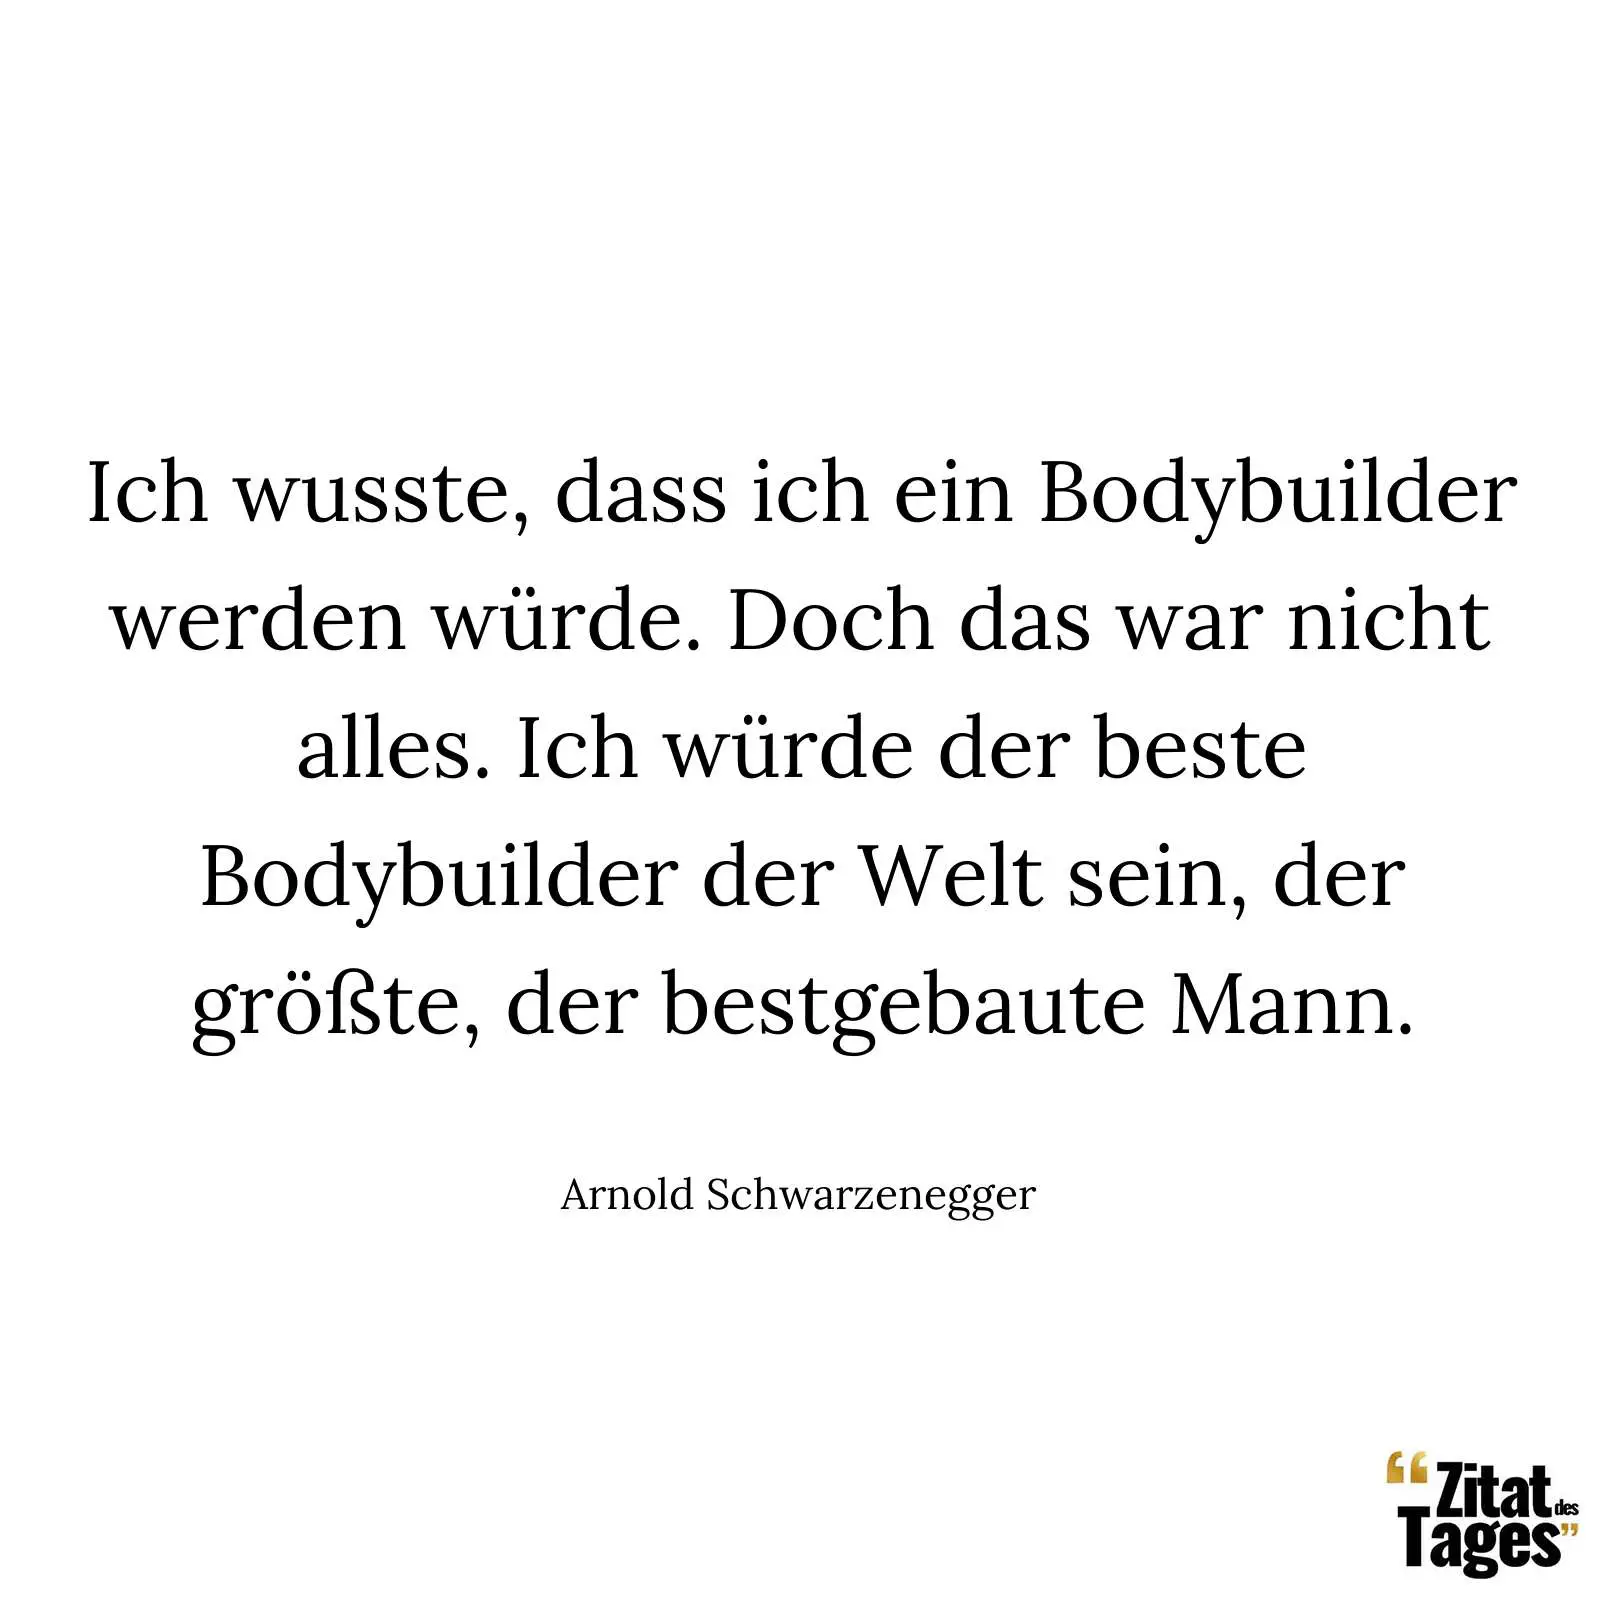 Ich wusste, dass ich ein Bodybuilder werden würde. Doch das war nicht alles. Ich würde der beste Bodybuilder der Welt sein, der größte, der bestgebaute Mann. - Arnold Schwarzenegger